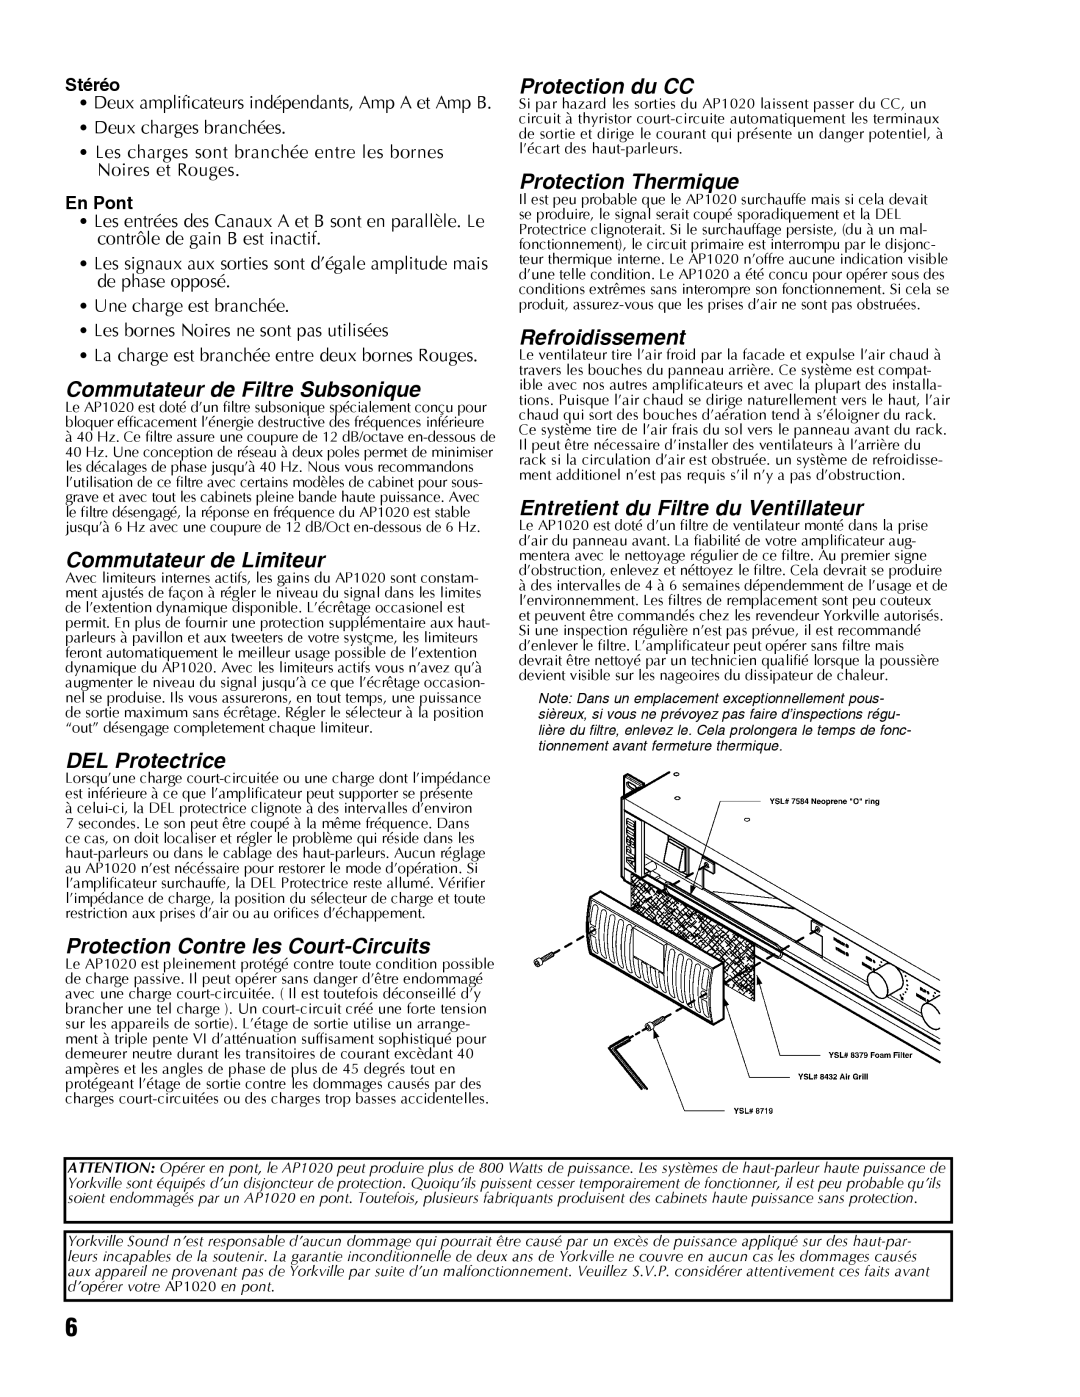 Yorkville Sound AP1020 manual Commutateur de Filtre Subsonique, Commutateur de Limiteur, DEL Protectrice, Protection du CC 